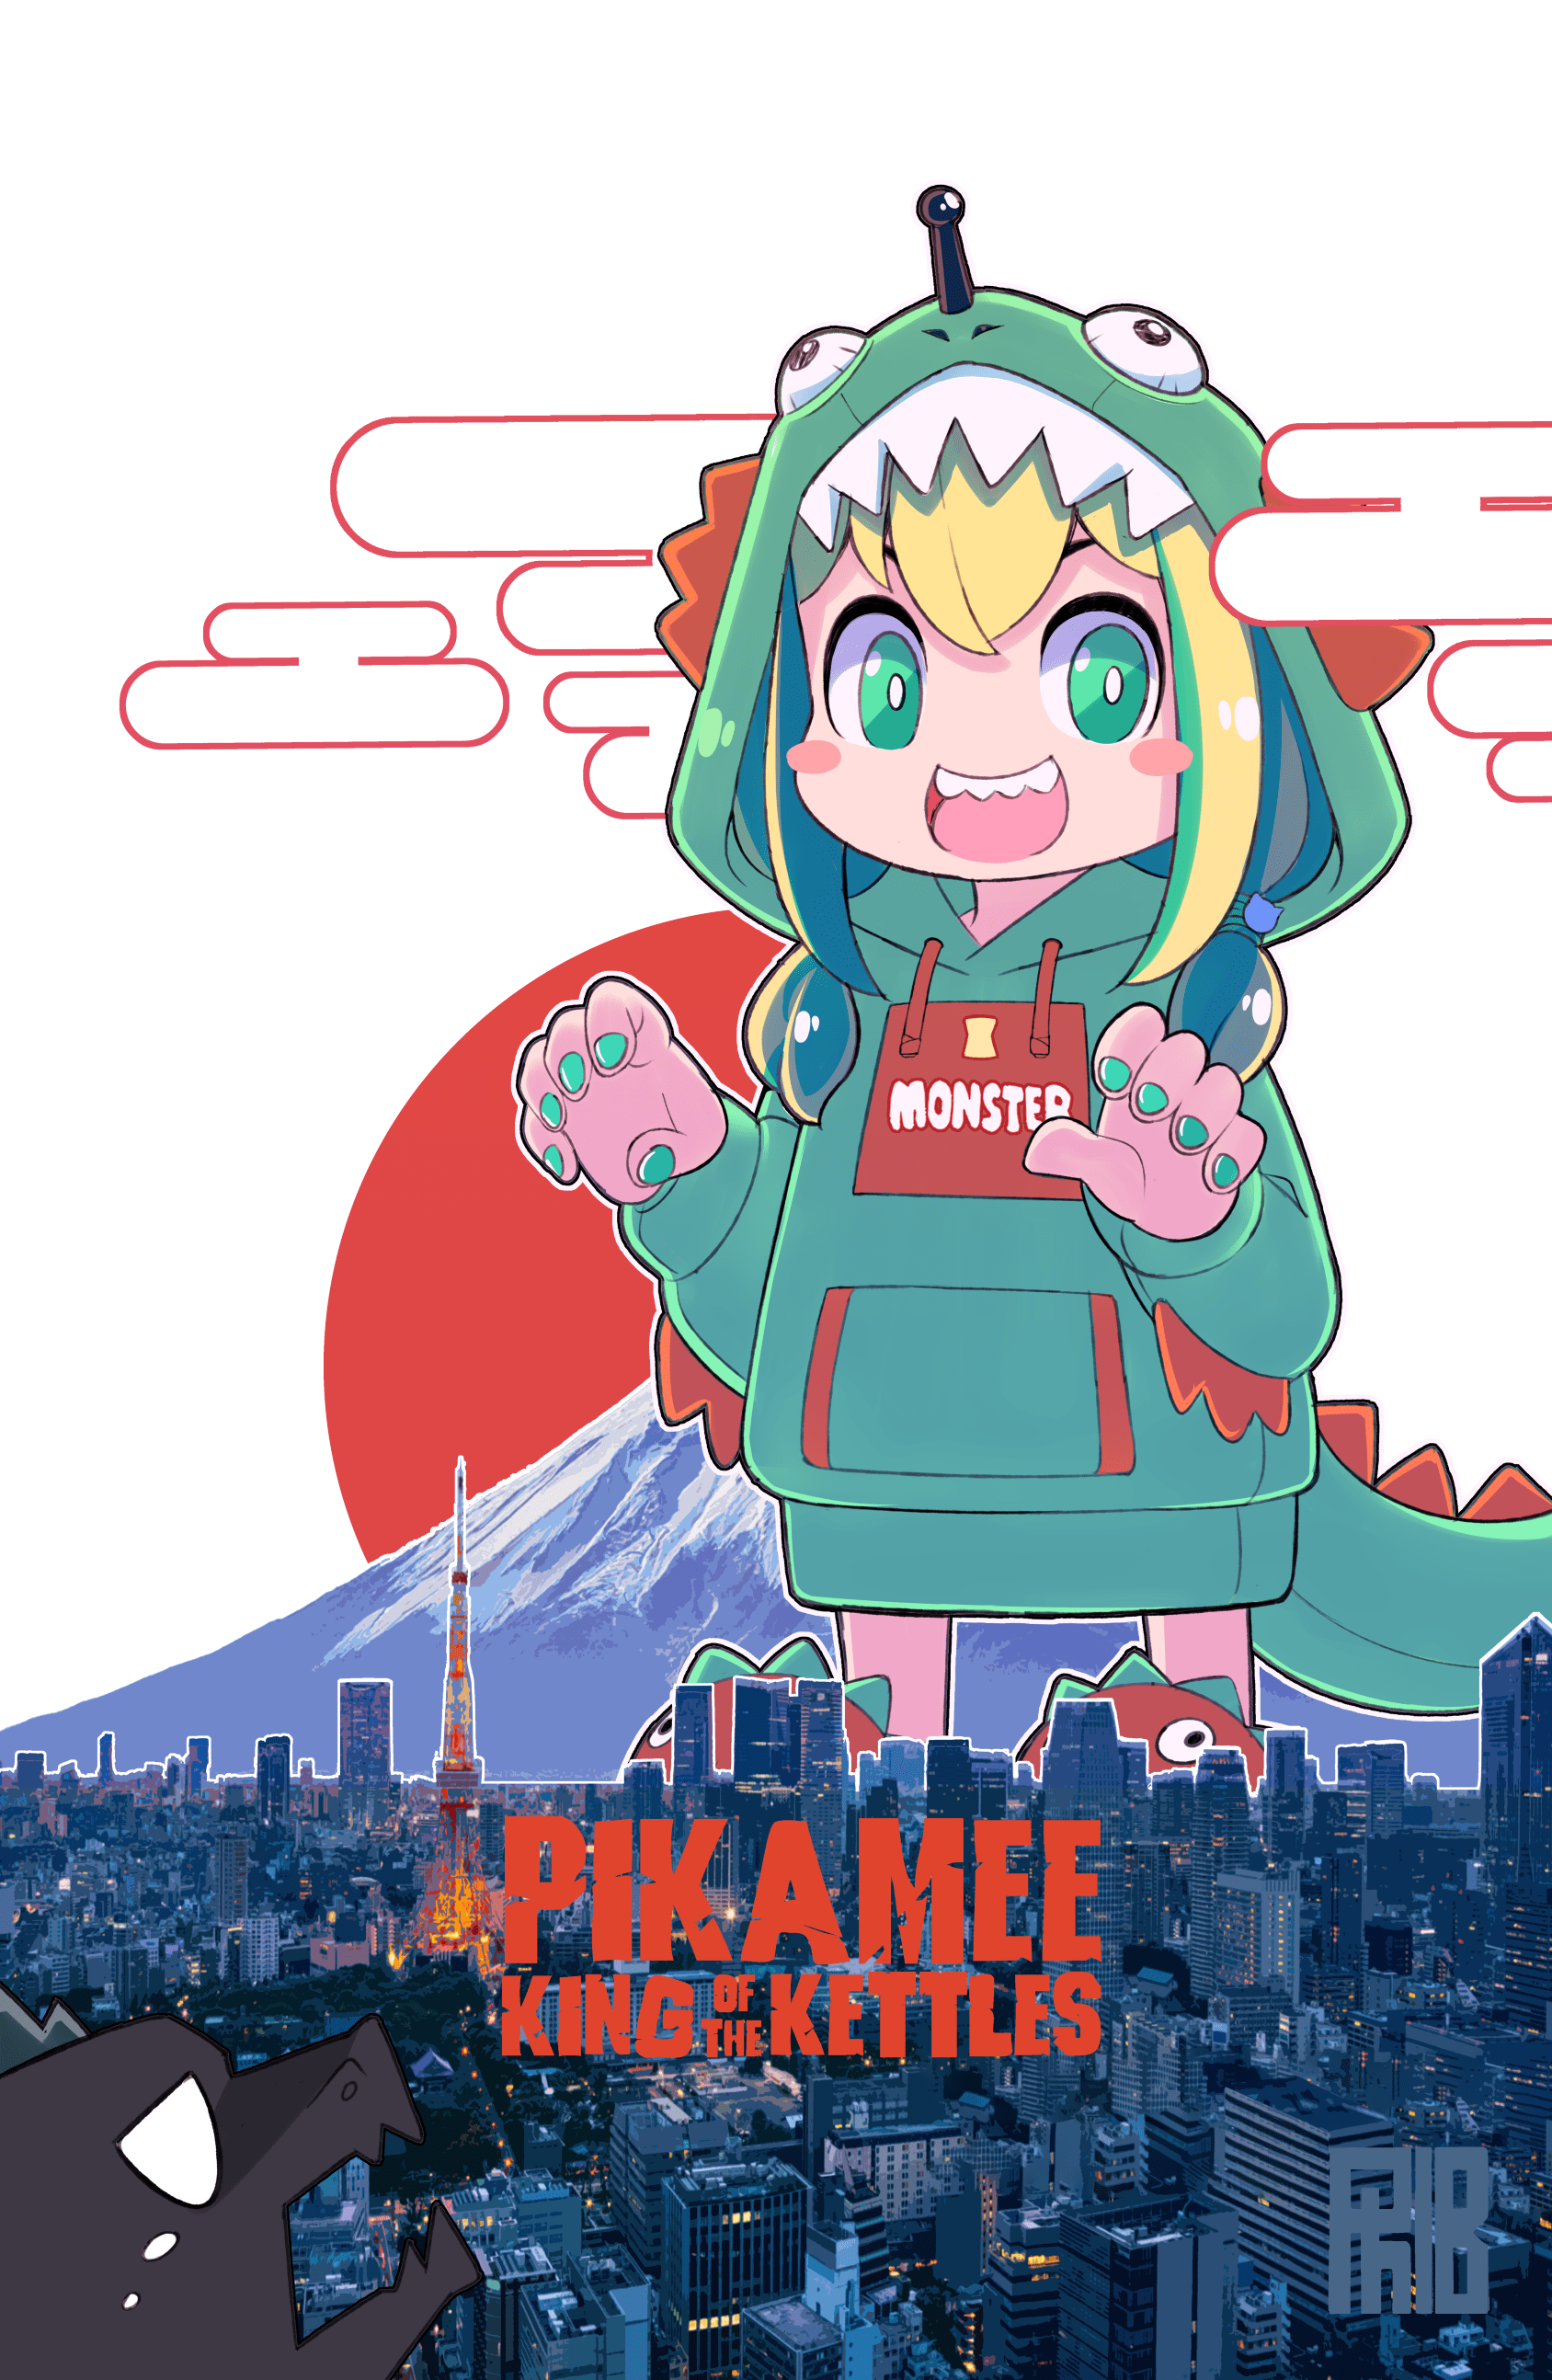 Pikamee ⚡⚡⚡ Tofu - Illustrations ART street